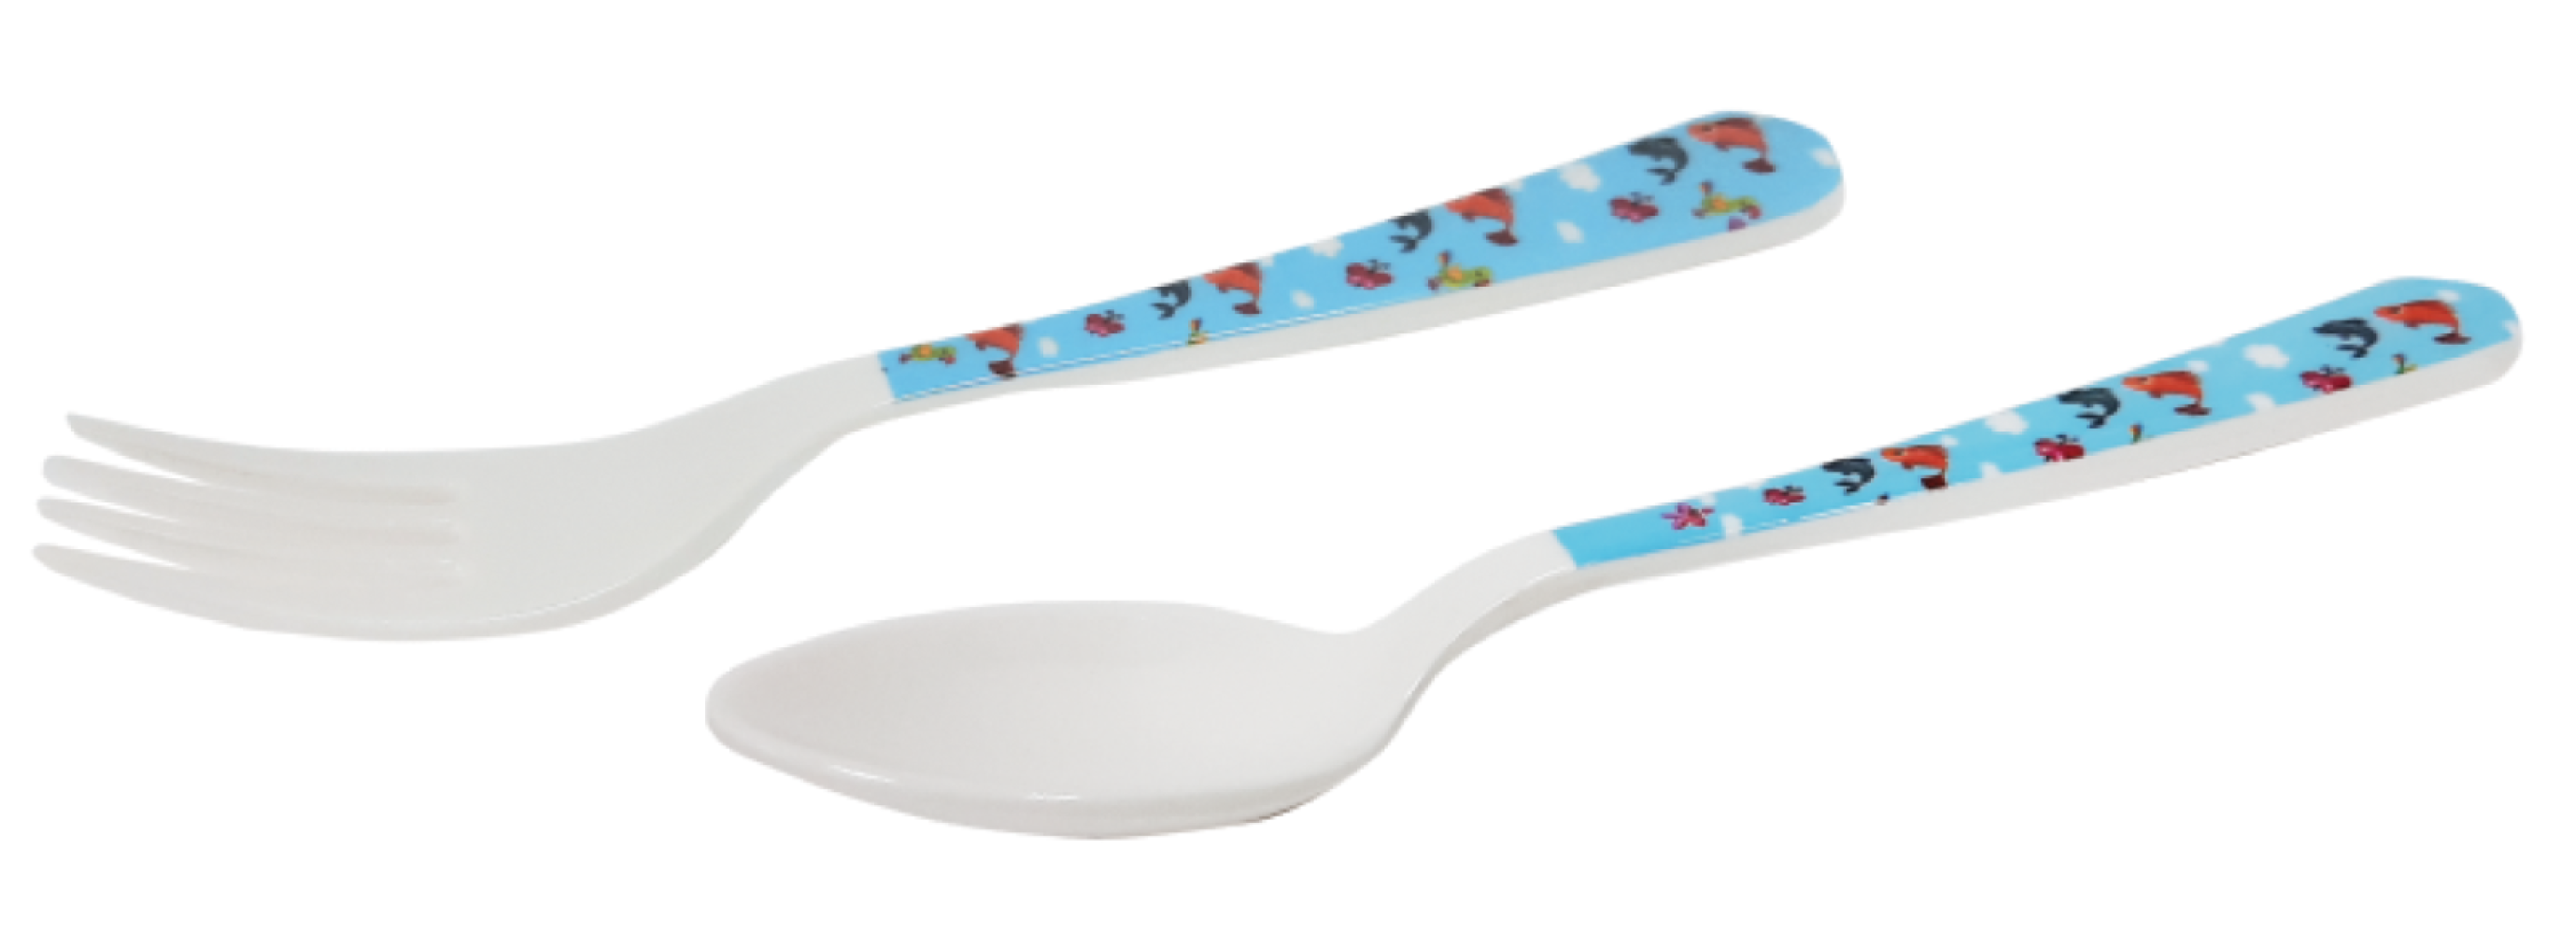 Kiddie Spoon / Fork